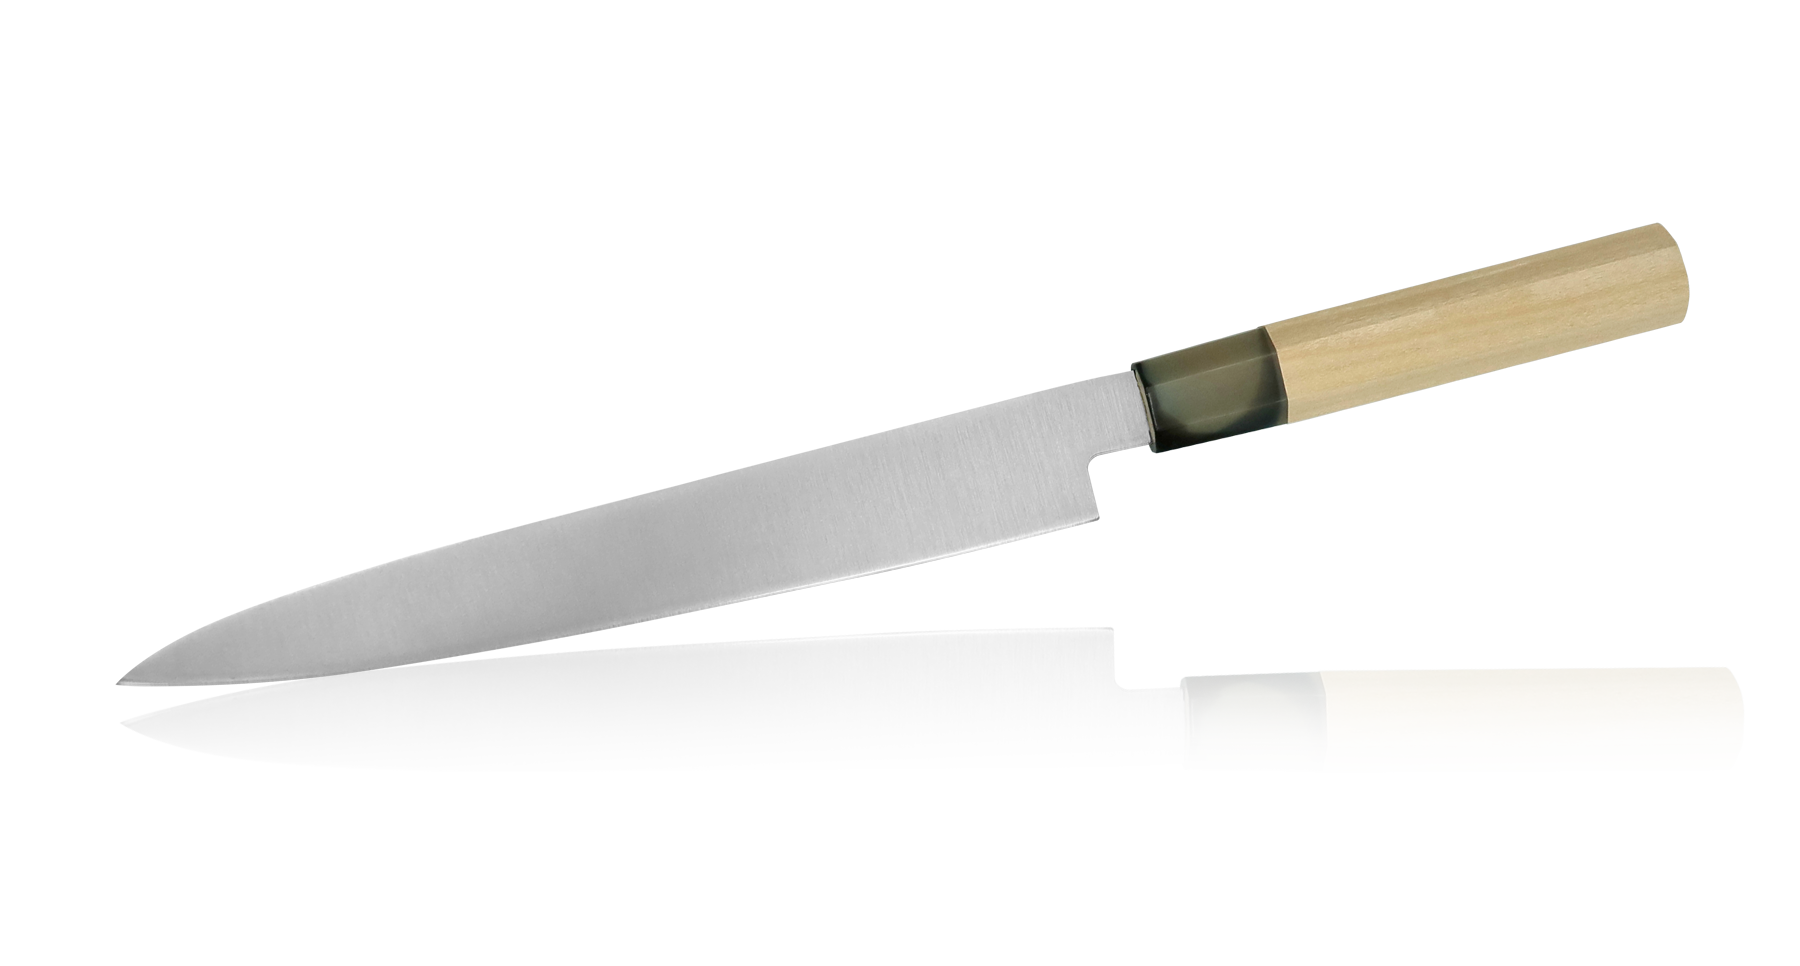 Японские филейные ножи Янагиба. Японский нож для суши Янагиба. Японские кухонные ножи Янагиба. Японские ножи Фуджи.